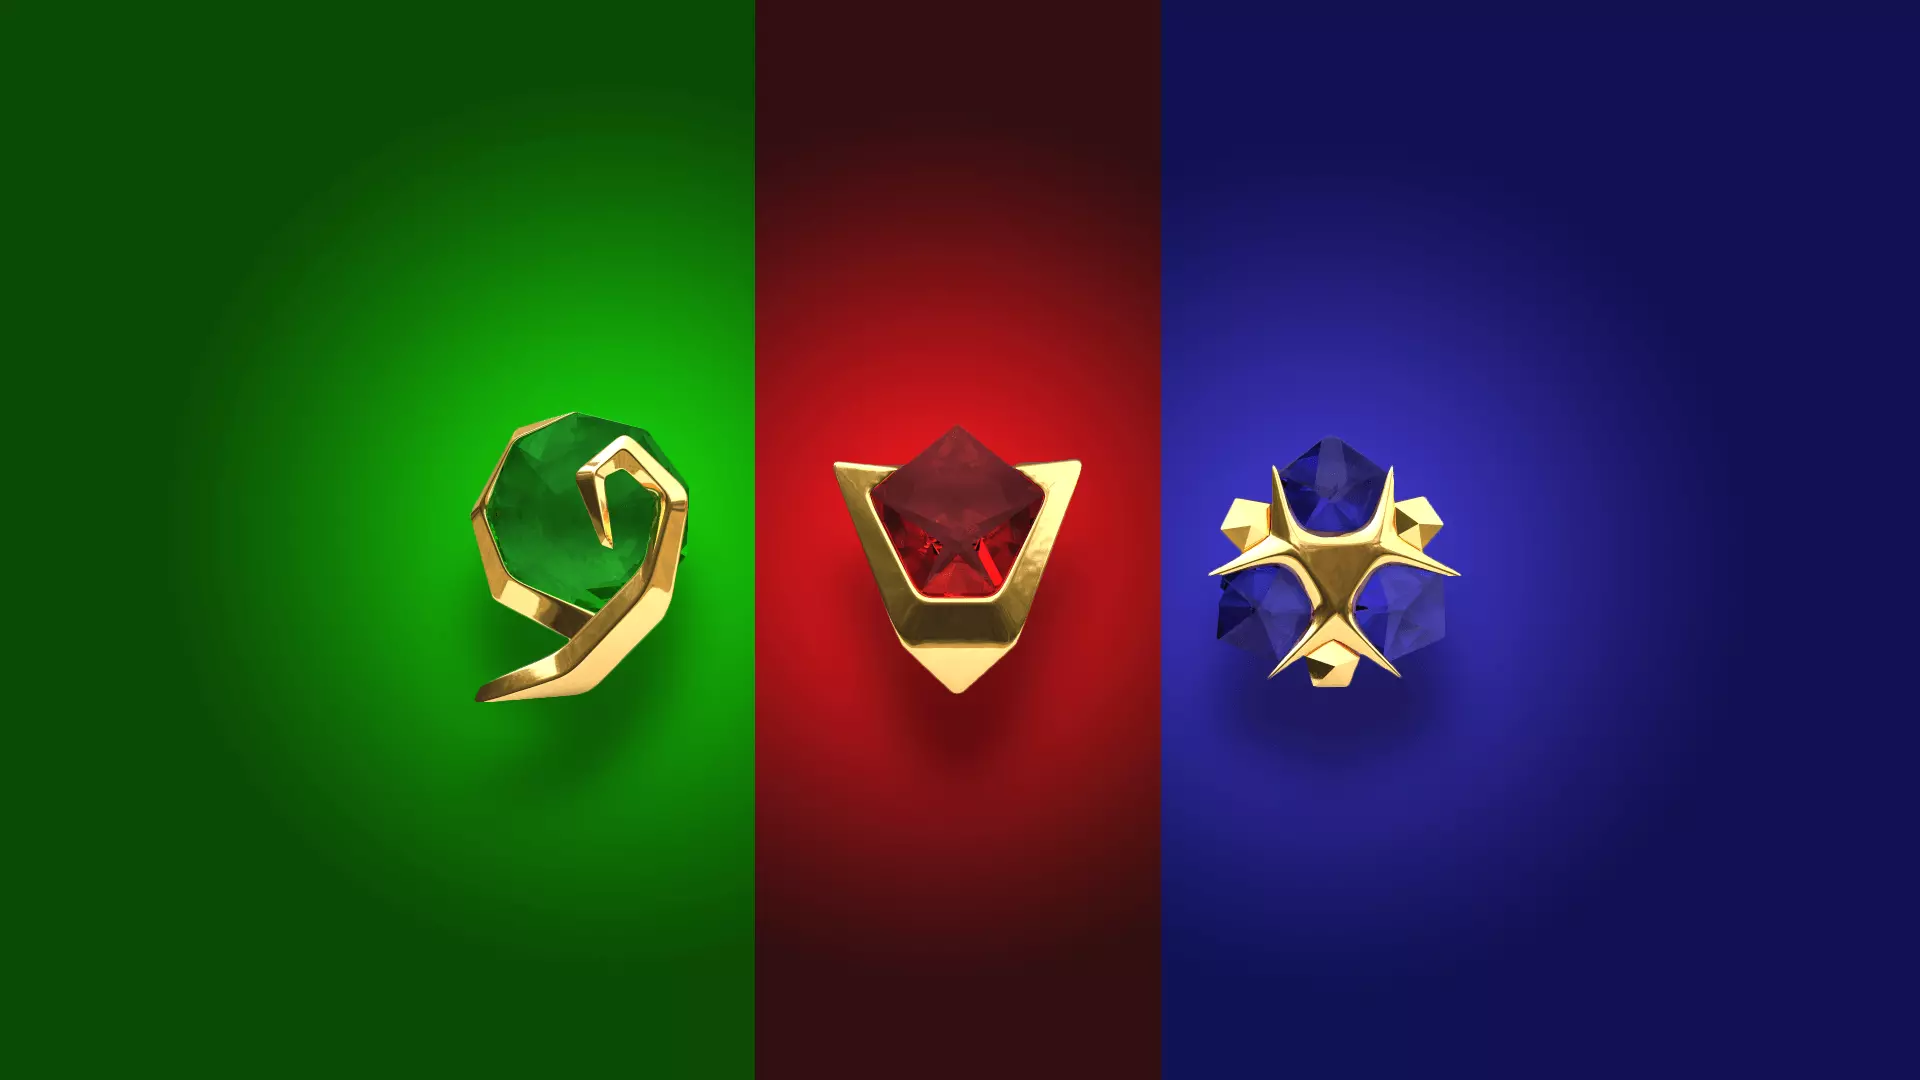 TRADUÇÃO PT-BR] A Lenda de Zelda: Ocarina do Tempo 3D [3DS] [Português do  Brasil] v1.2 - JumpManClub Brasil - Traduções de Games